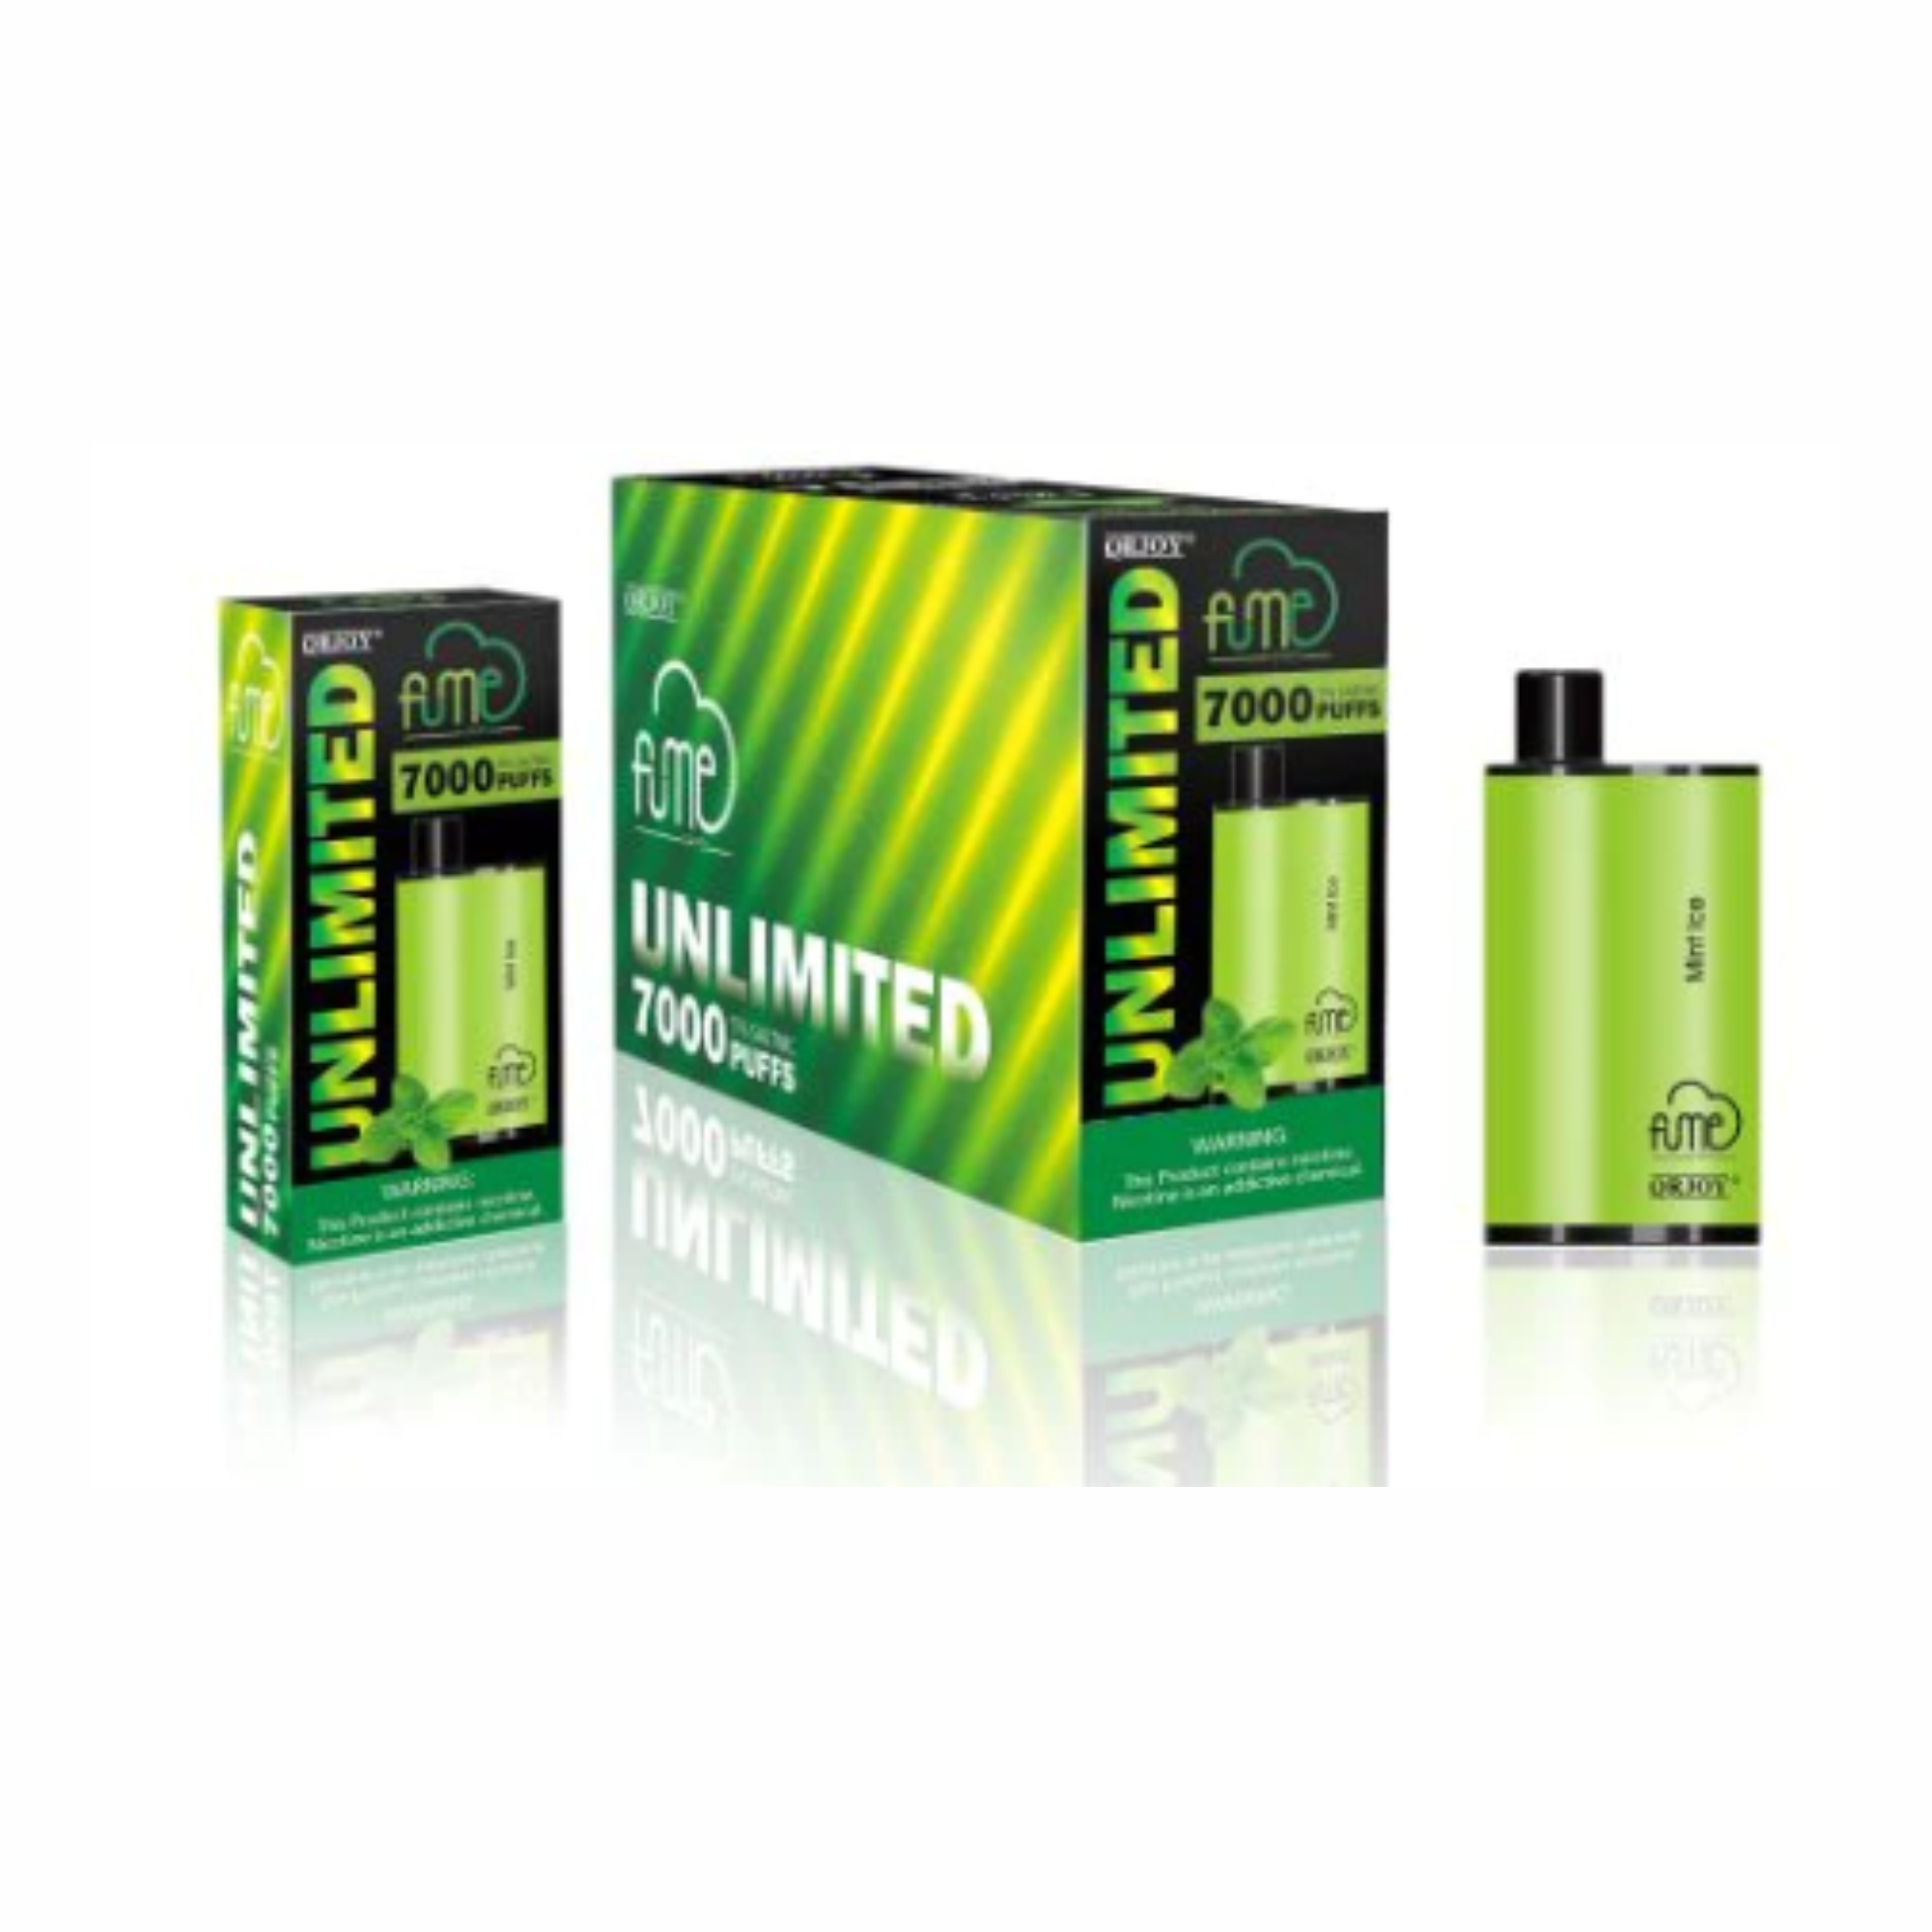 Fume Unlimited 7000 Puffs Disposable Vape Wholesale - 1 Box / 5pcs